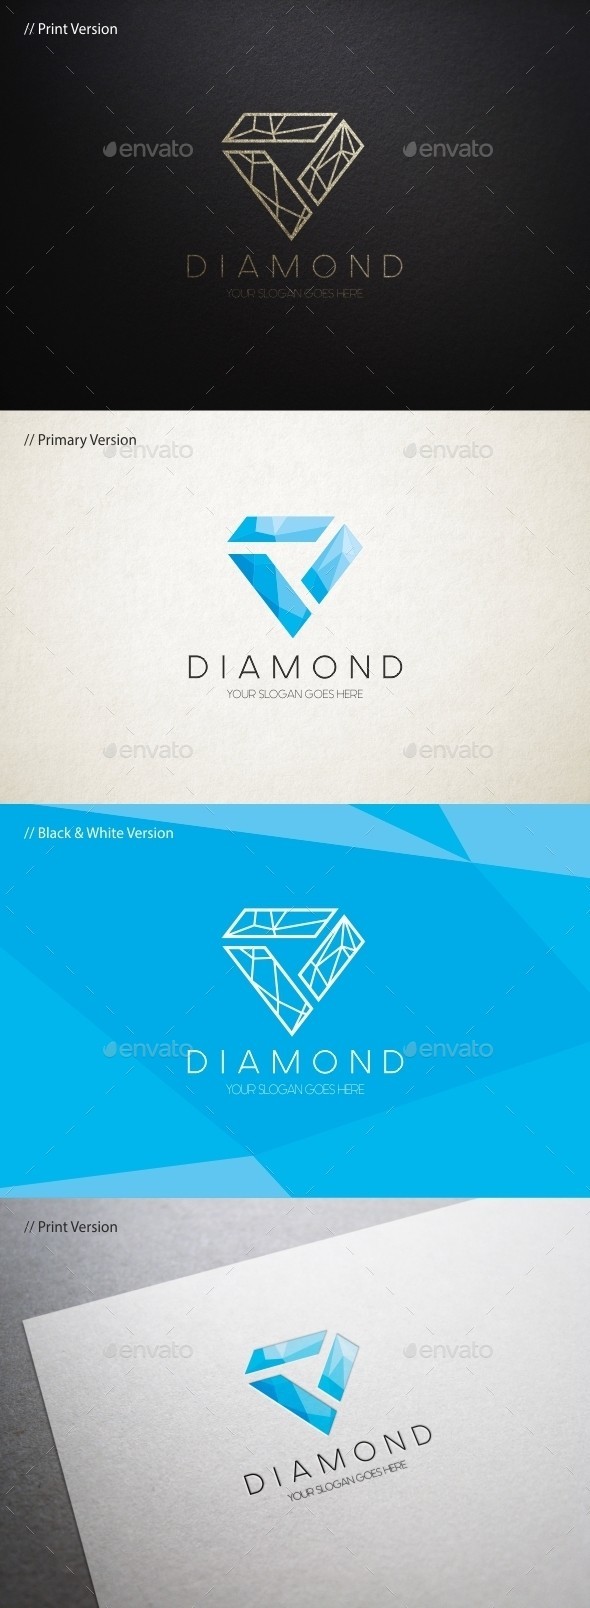 Diamond 20logo 20template 20590